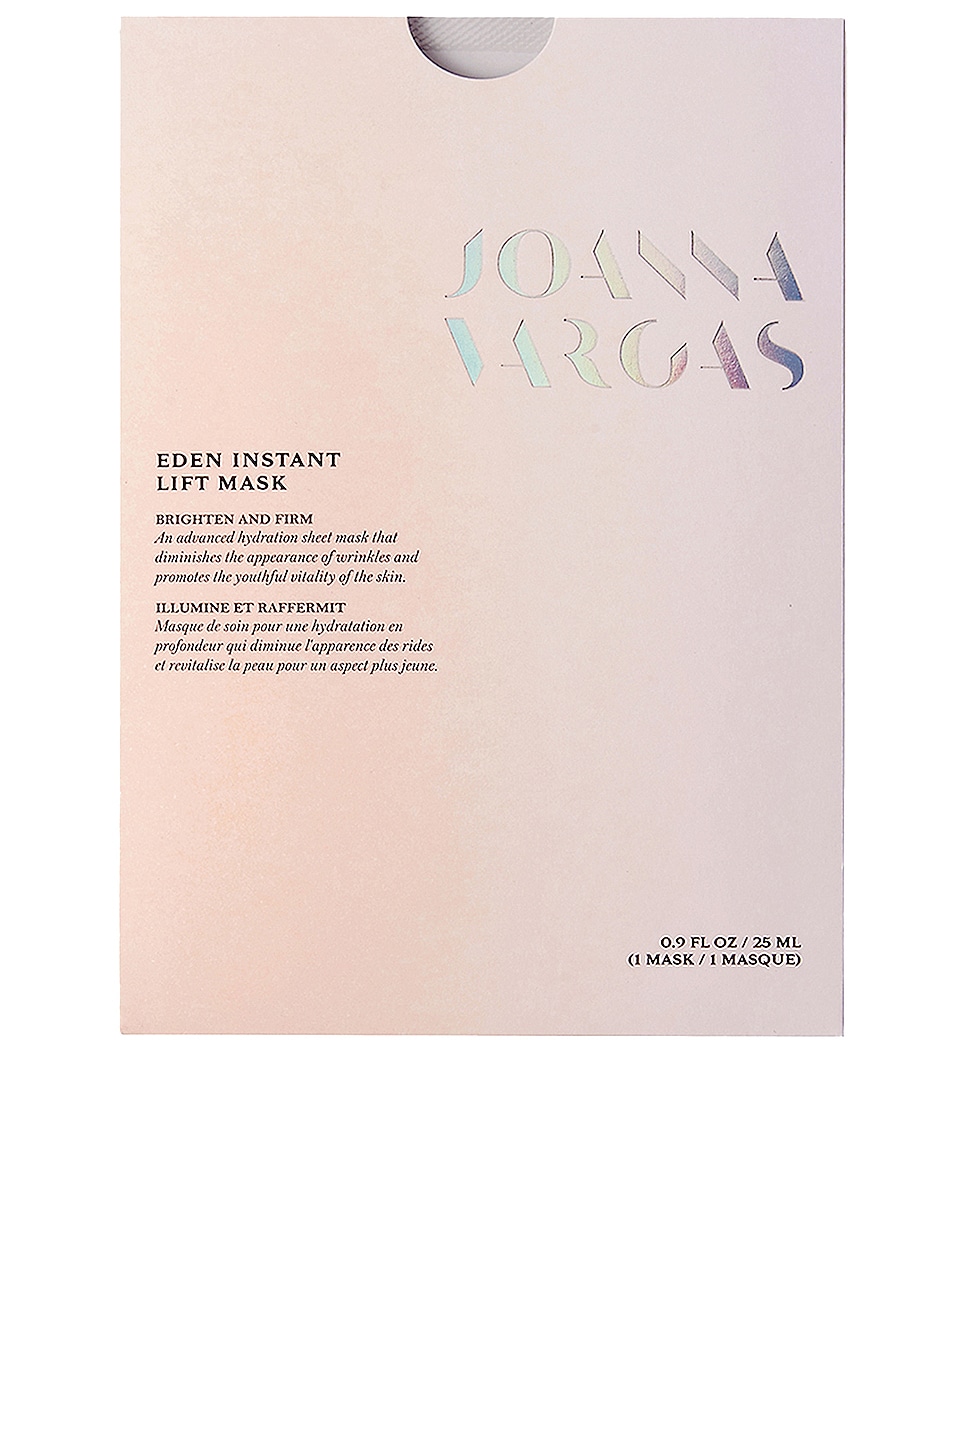 Shop Joanna Vargas Eden Instant Lift Sheet Mask In N,a